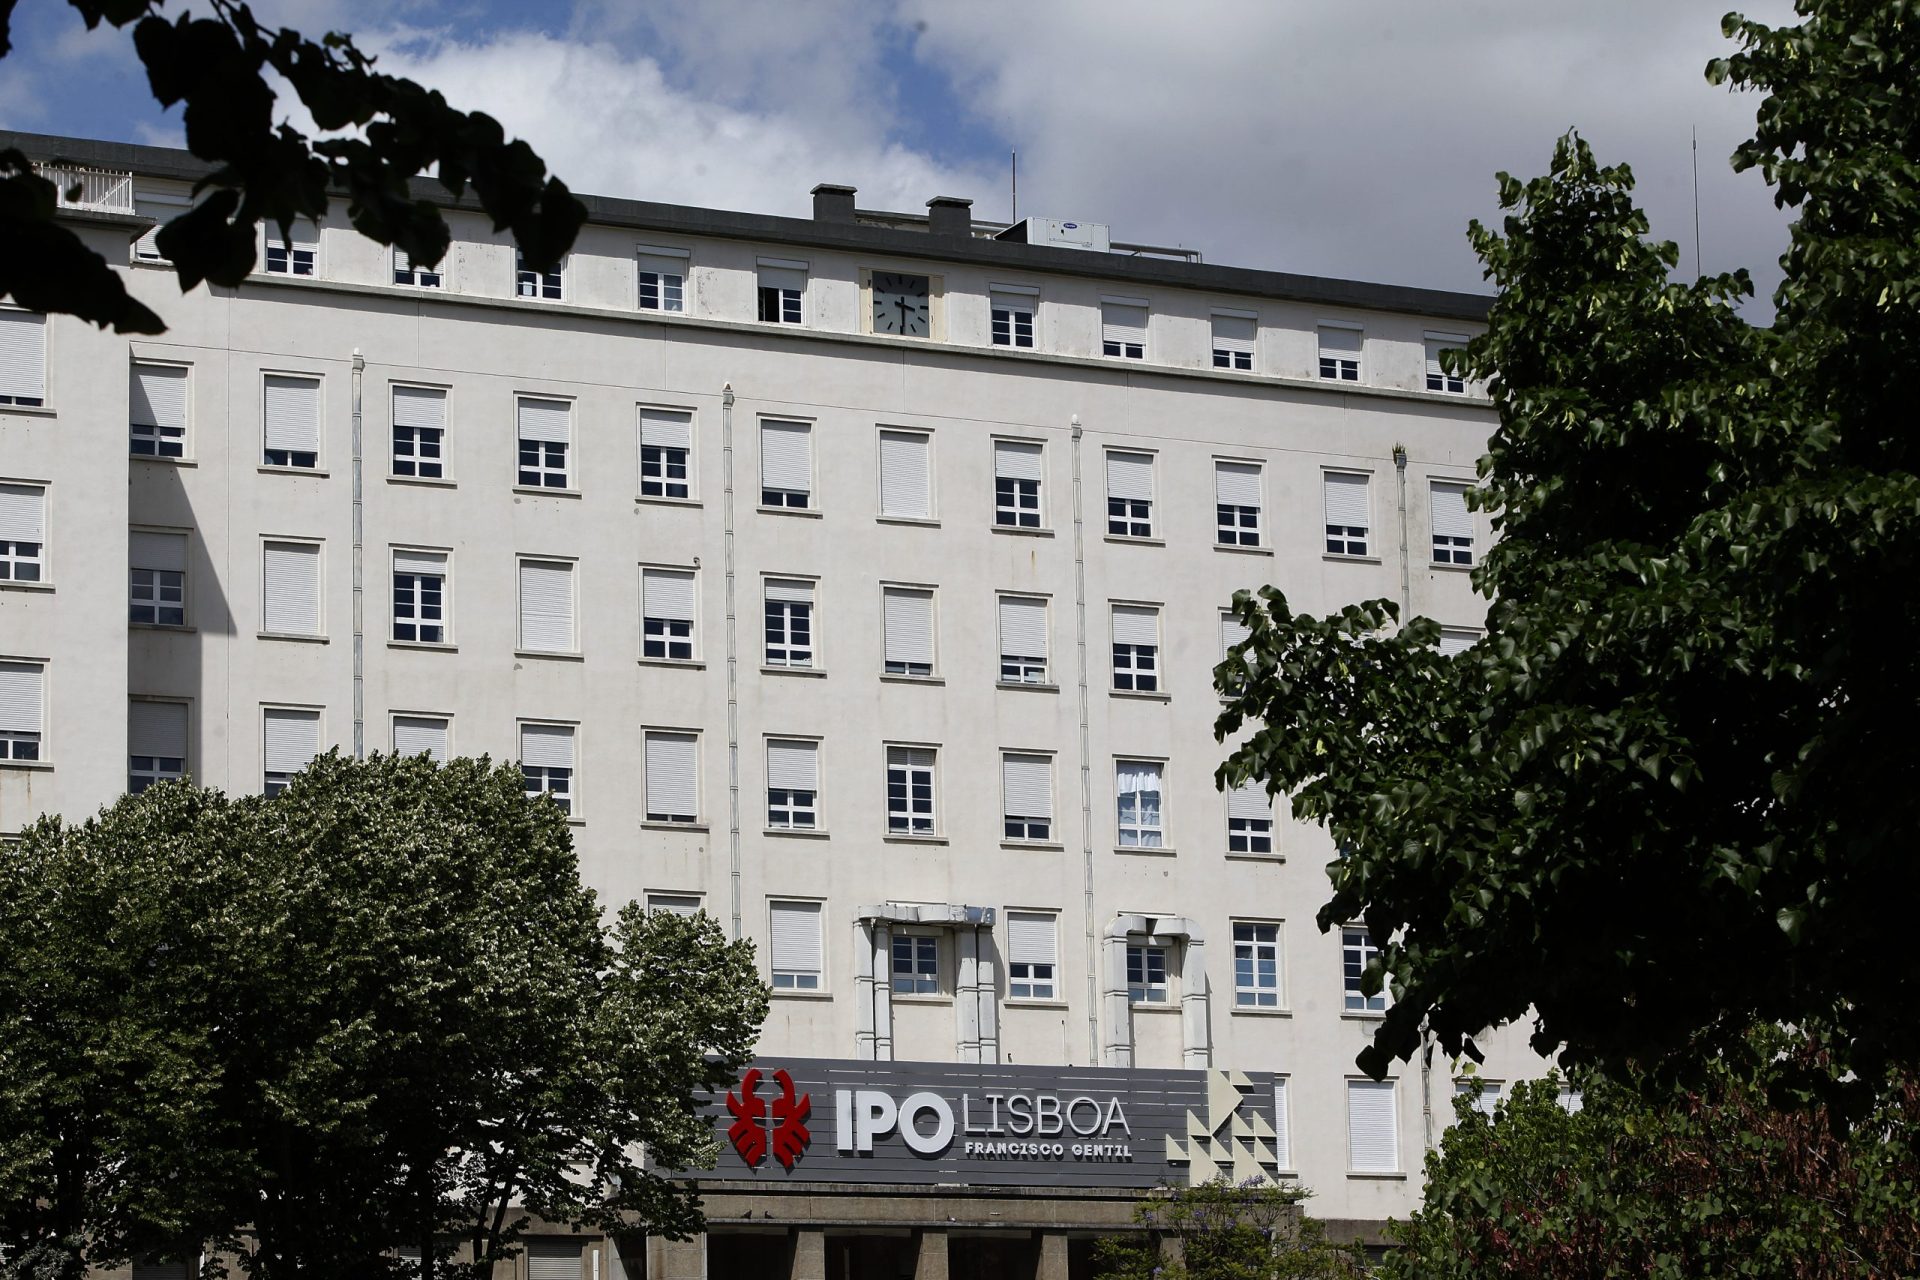 Detetado foco de covid-19 no IPO de Lisboa